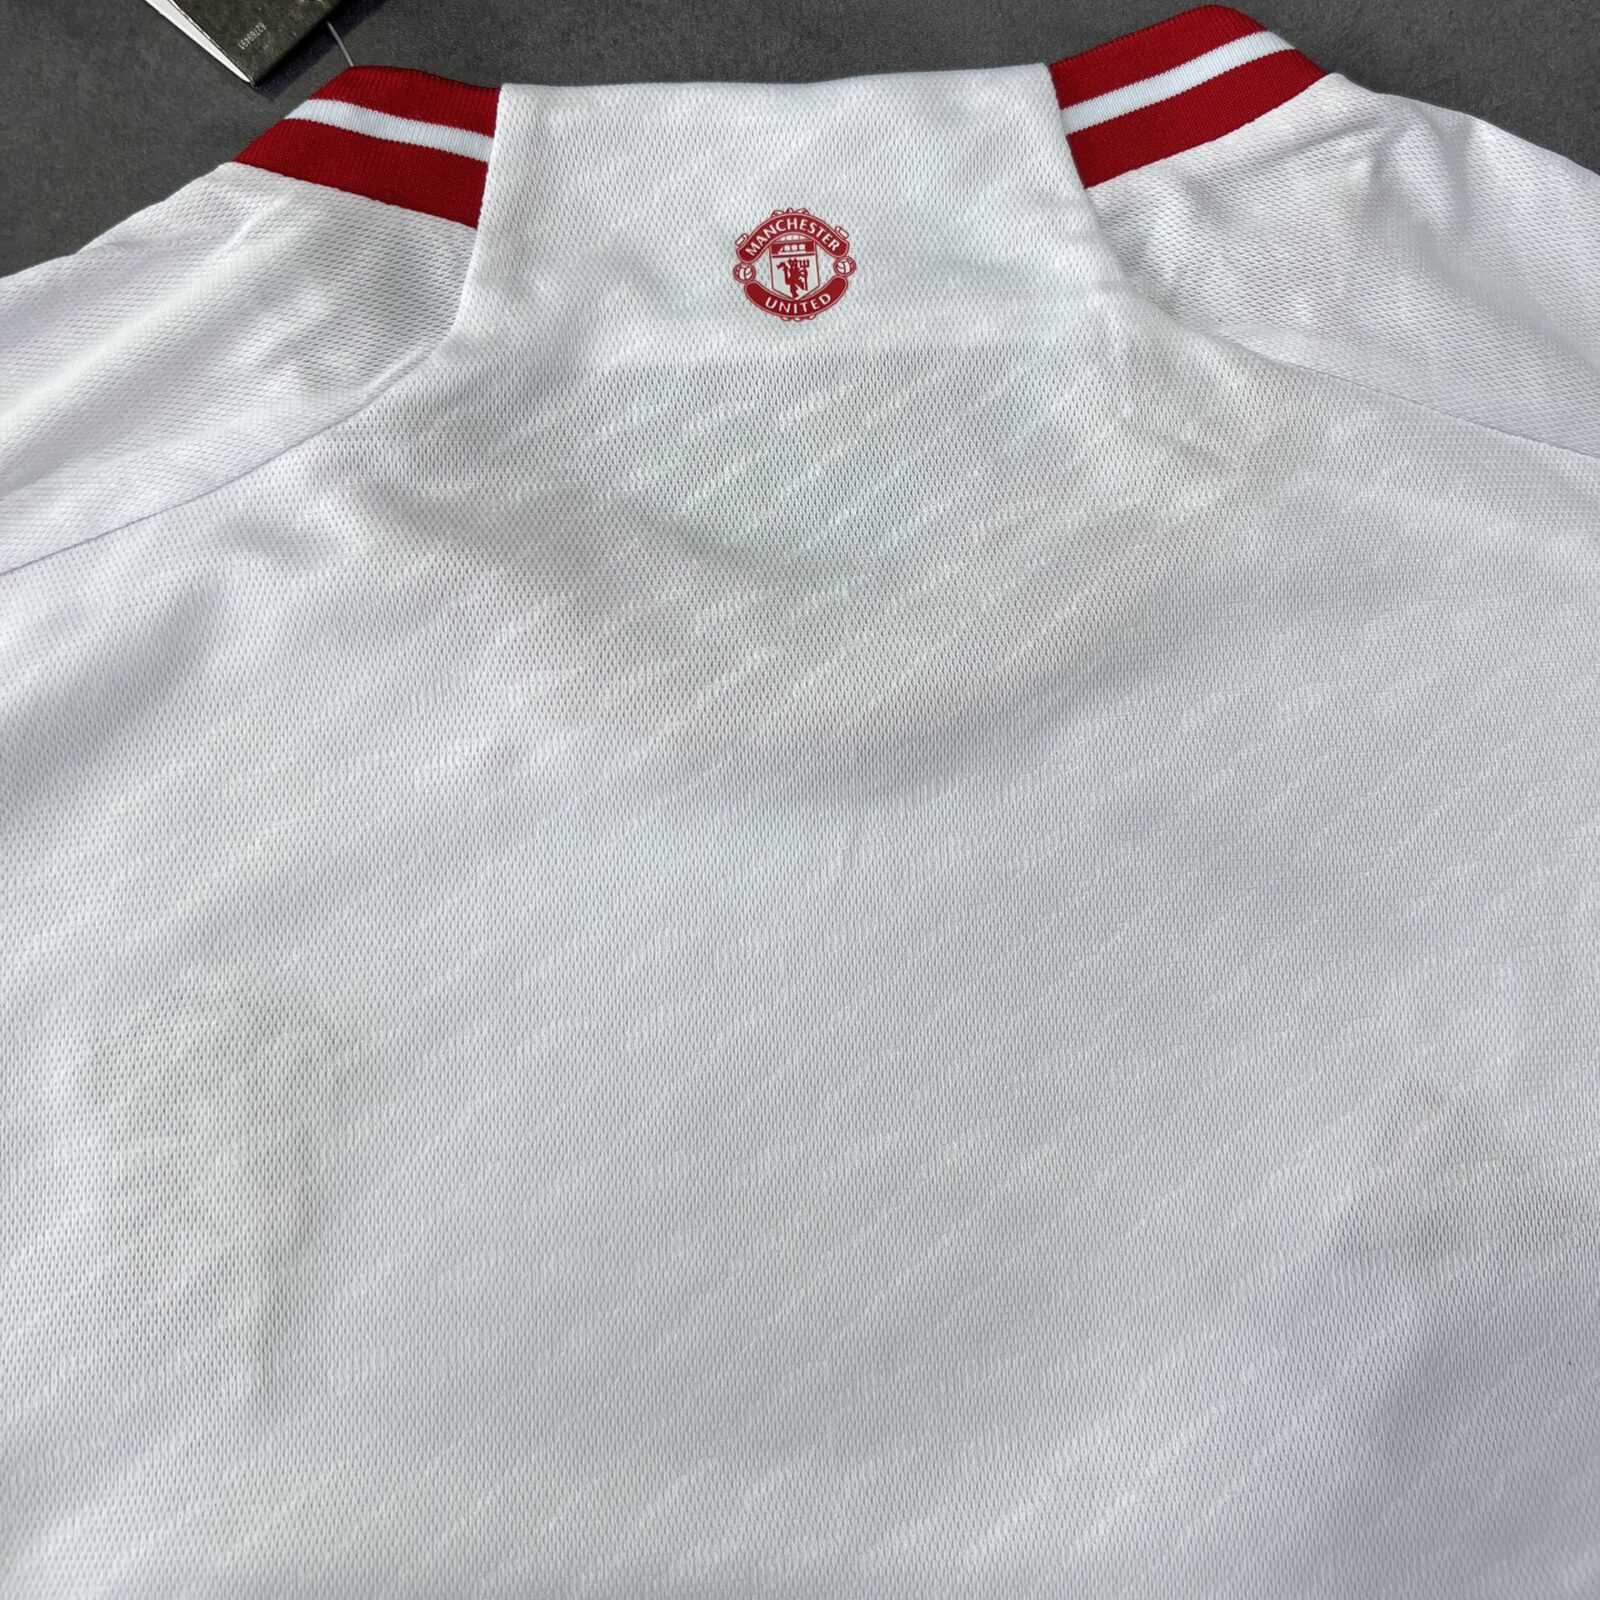 Bộ quần áo đá banh clb bóng đá mu manchester united third 2324 trắng logo đỏ thêu năm 2023 2024 3 sọc 1